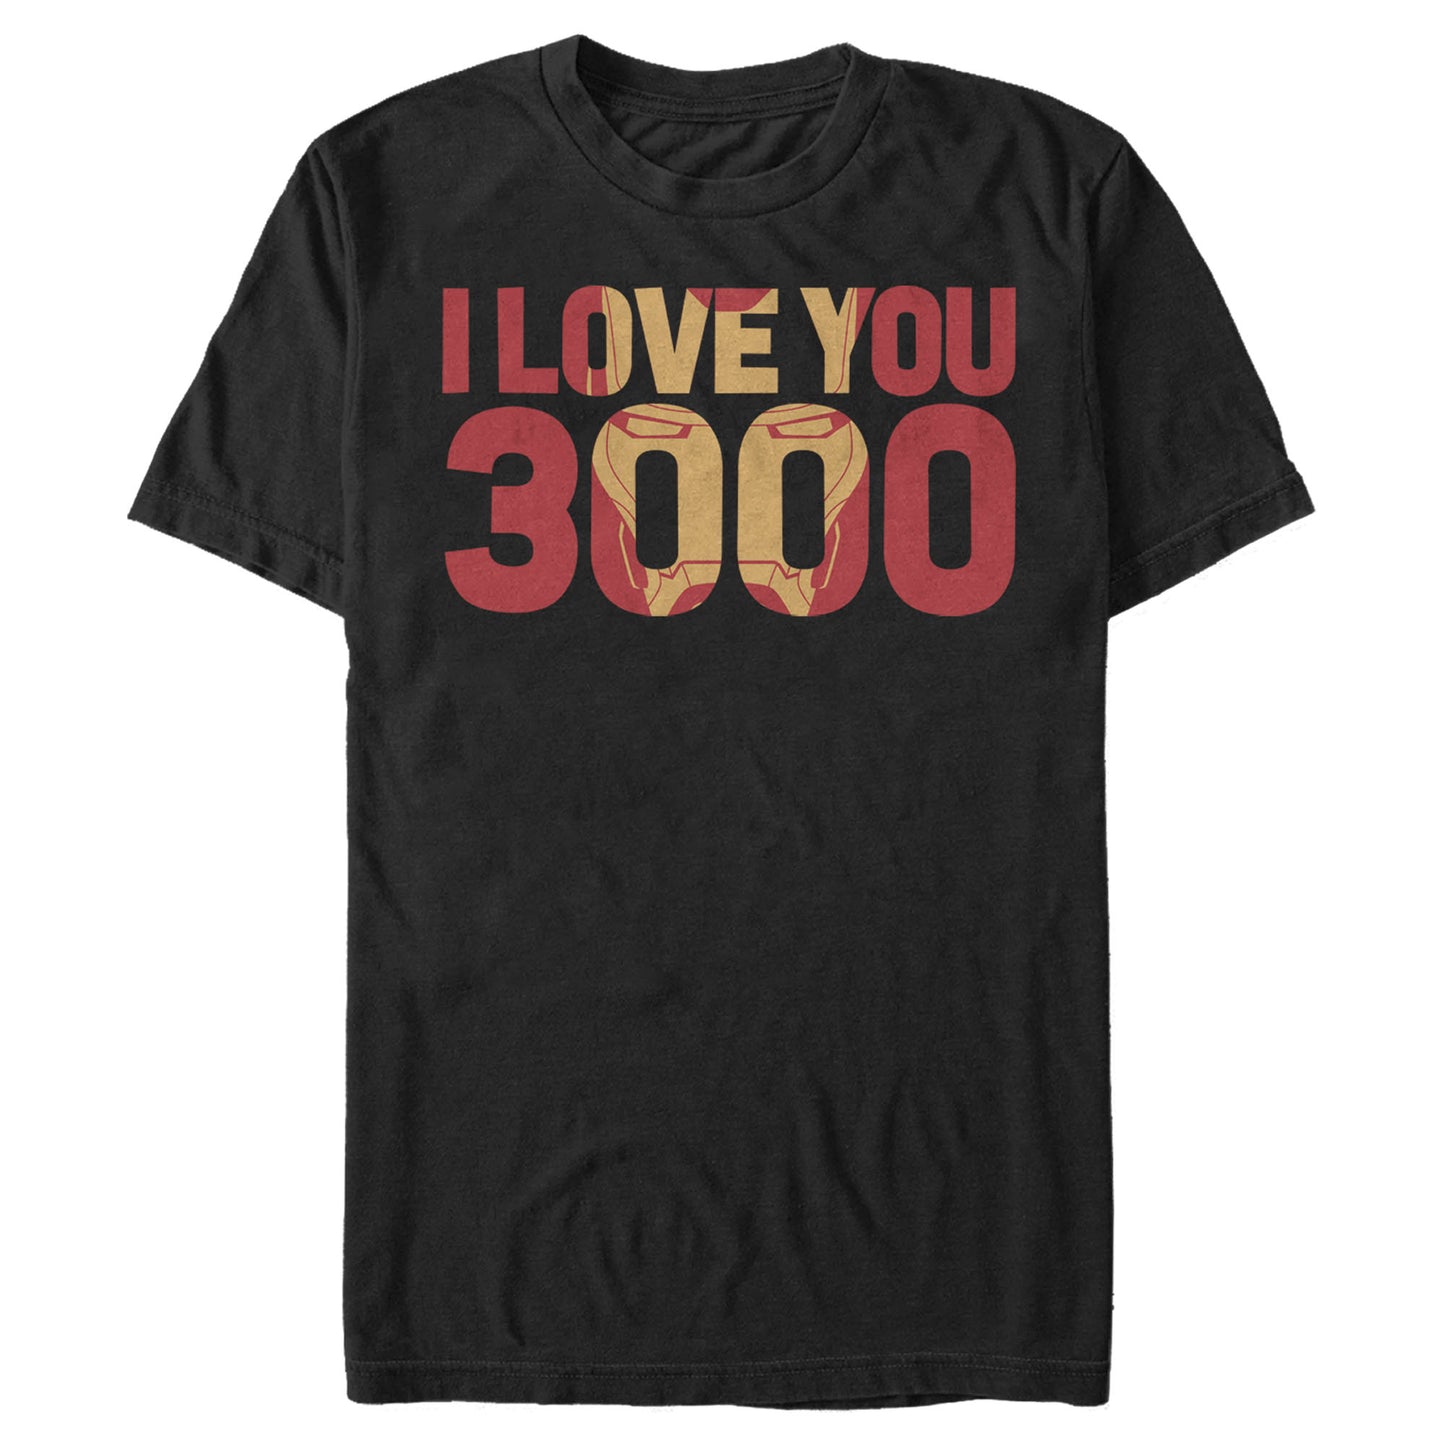 Men's Marvel Love You 3000 T-Shirt